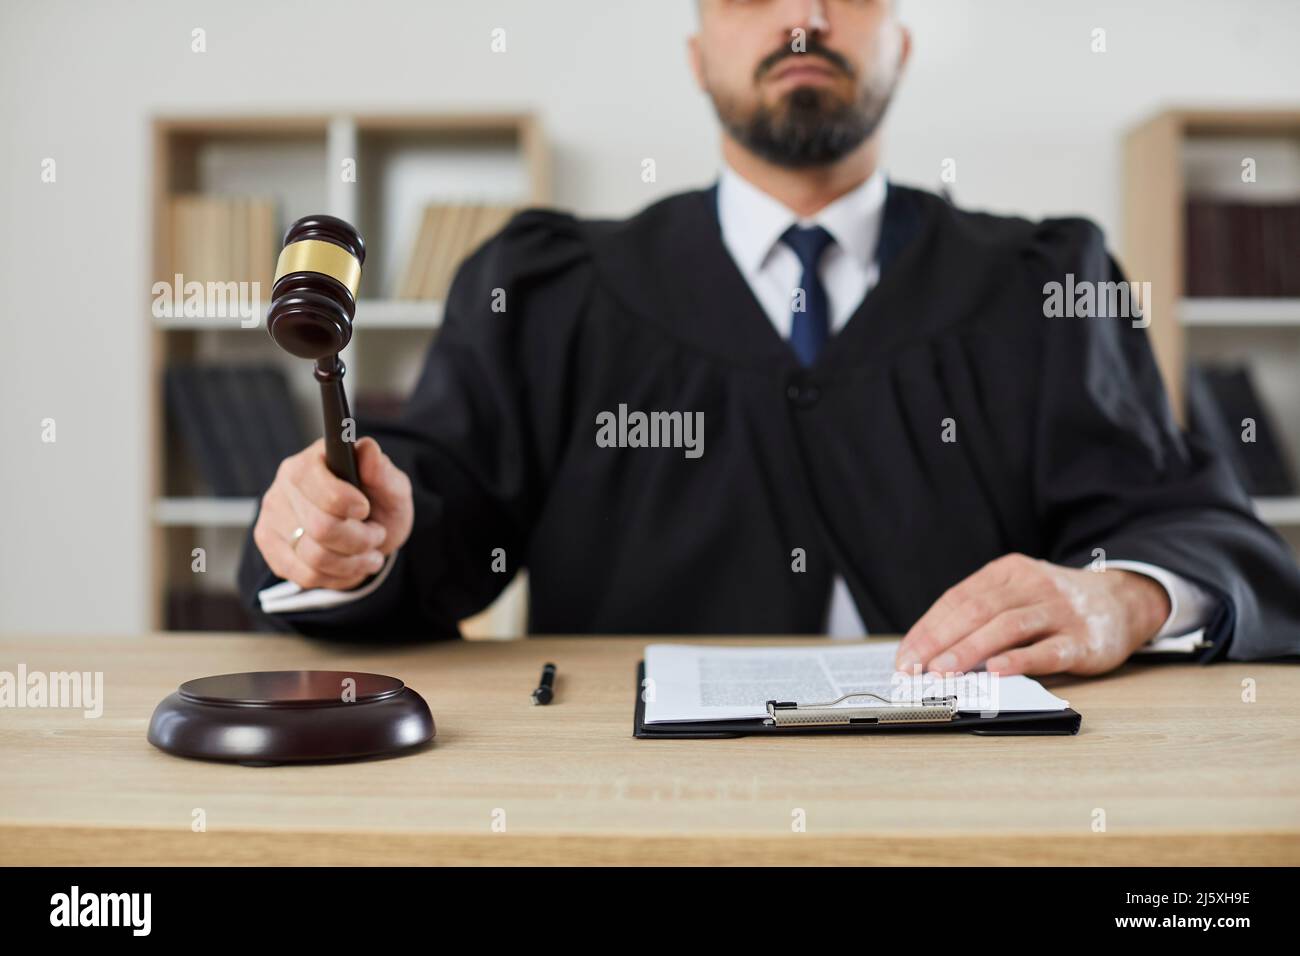 Männlicher Richter, der das Urteil erlässt und die Schließung des Falles ankündigt, indem er Gavel auf den Schallblock trifft. Stockfoto